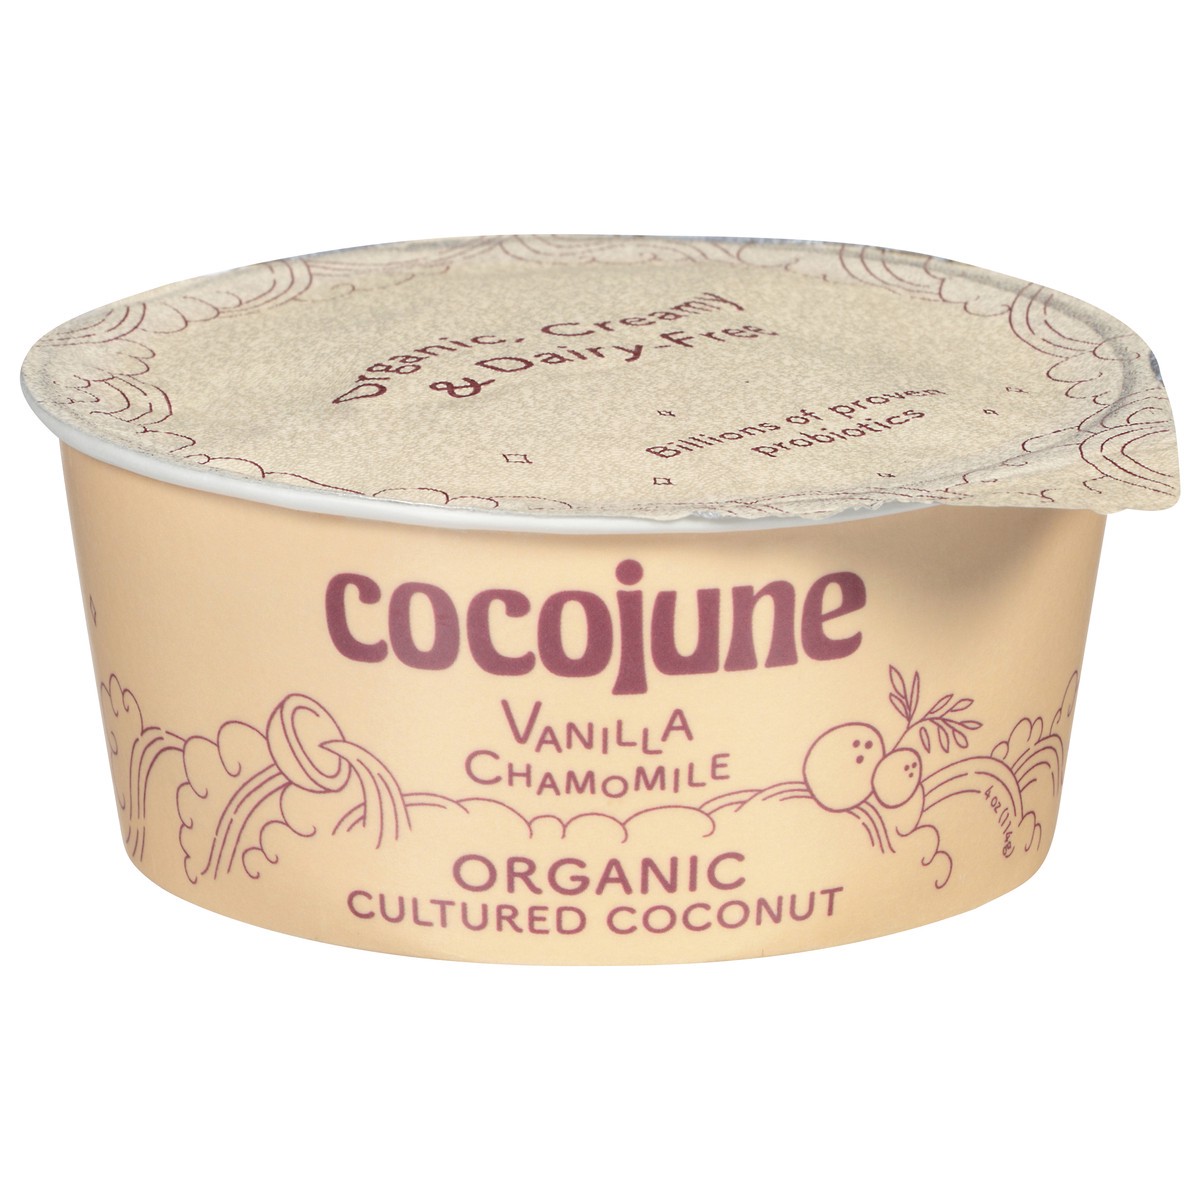 slide 1 of 9, Cocojune Organic Vanilla Chamomile Cultured Coconut, 4 fl oz